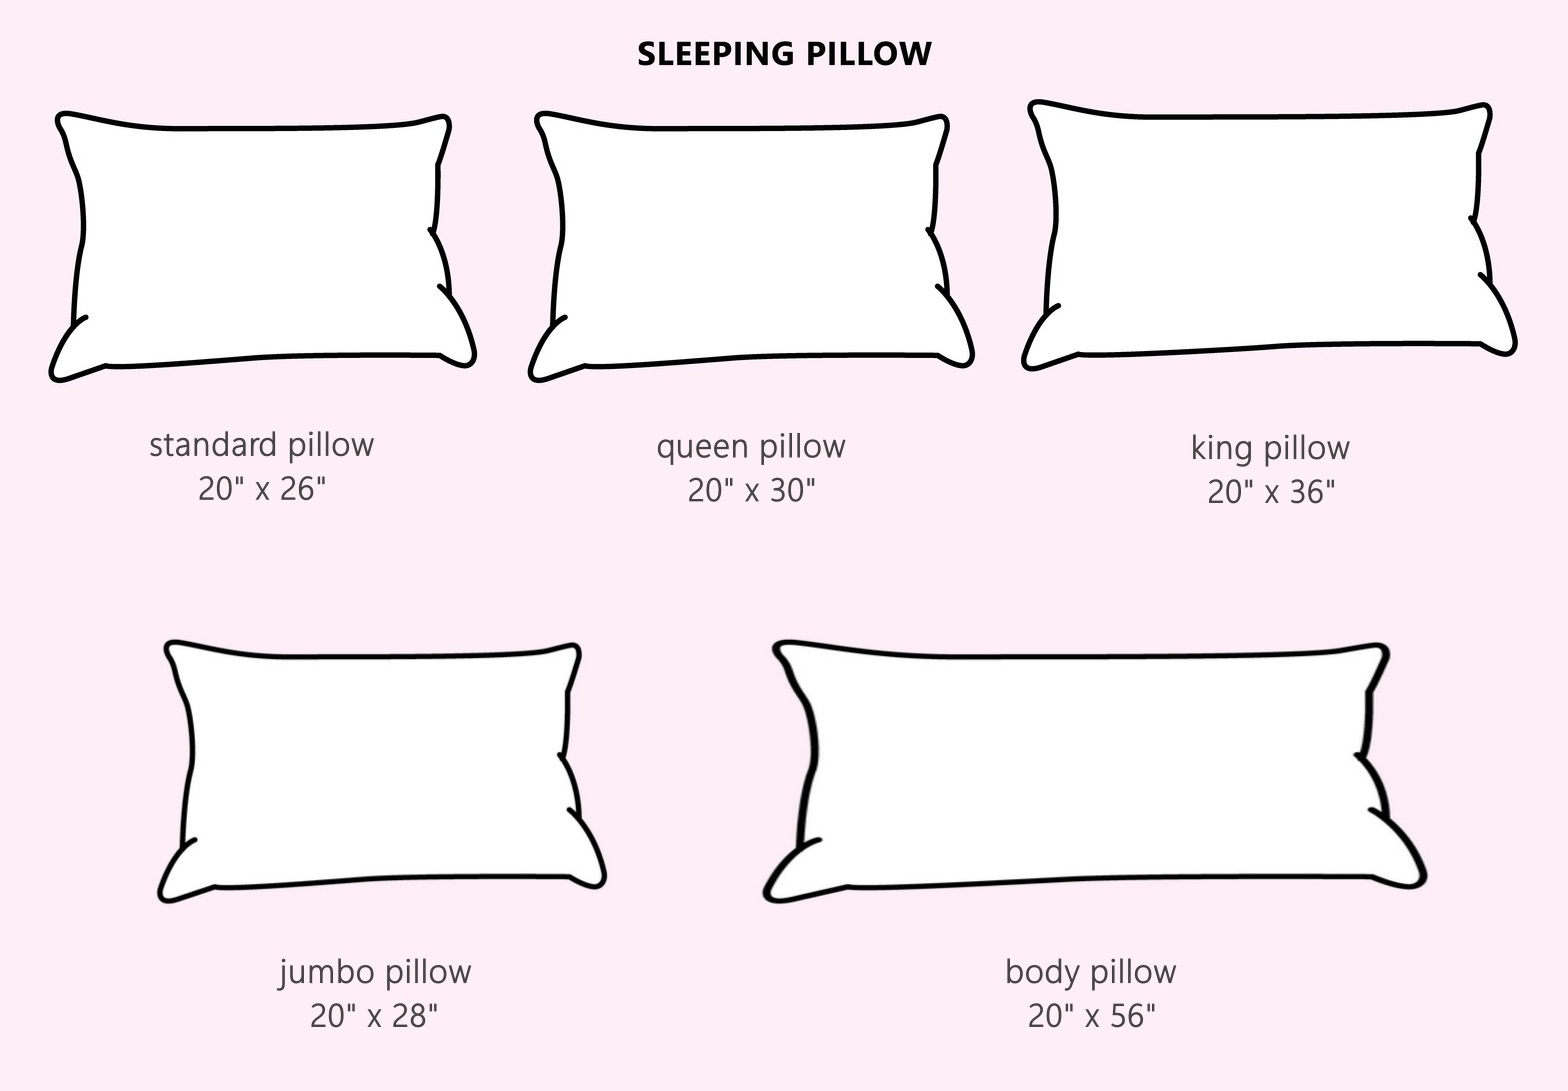 https://www.bestmatt.com/wp-content/uploads/2022/01/5-pillow-sizes.jpg